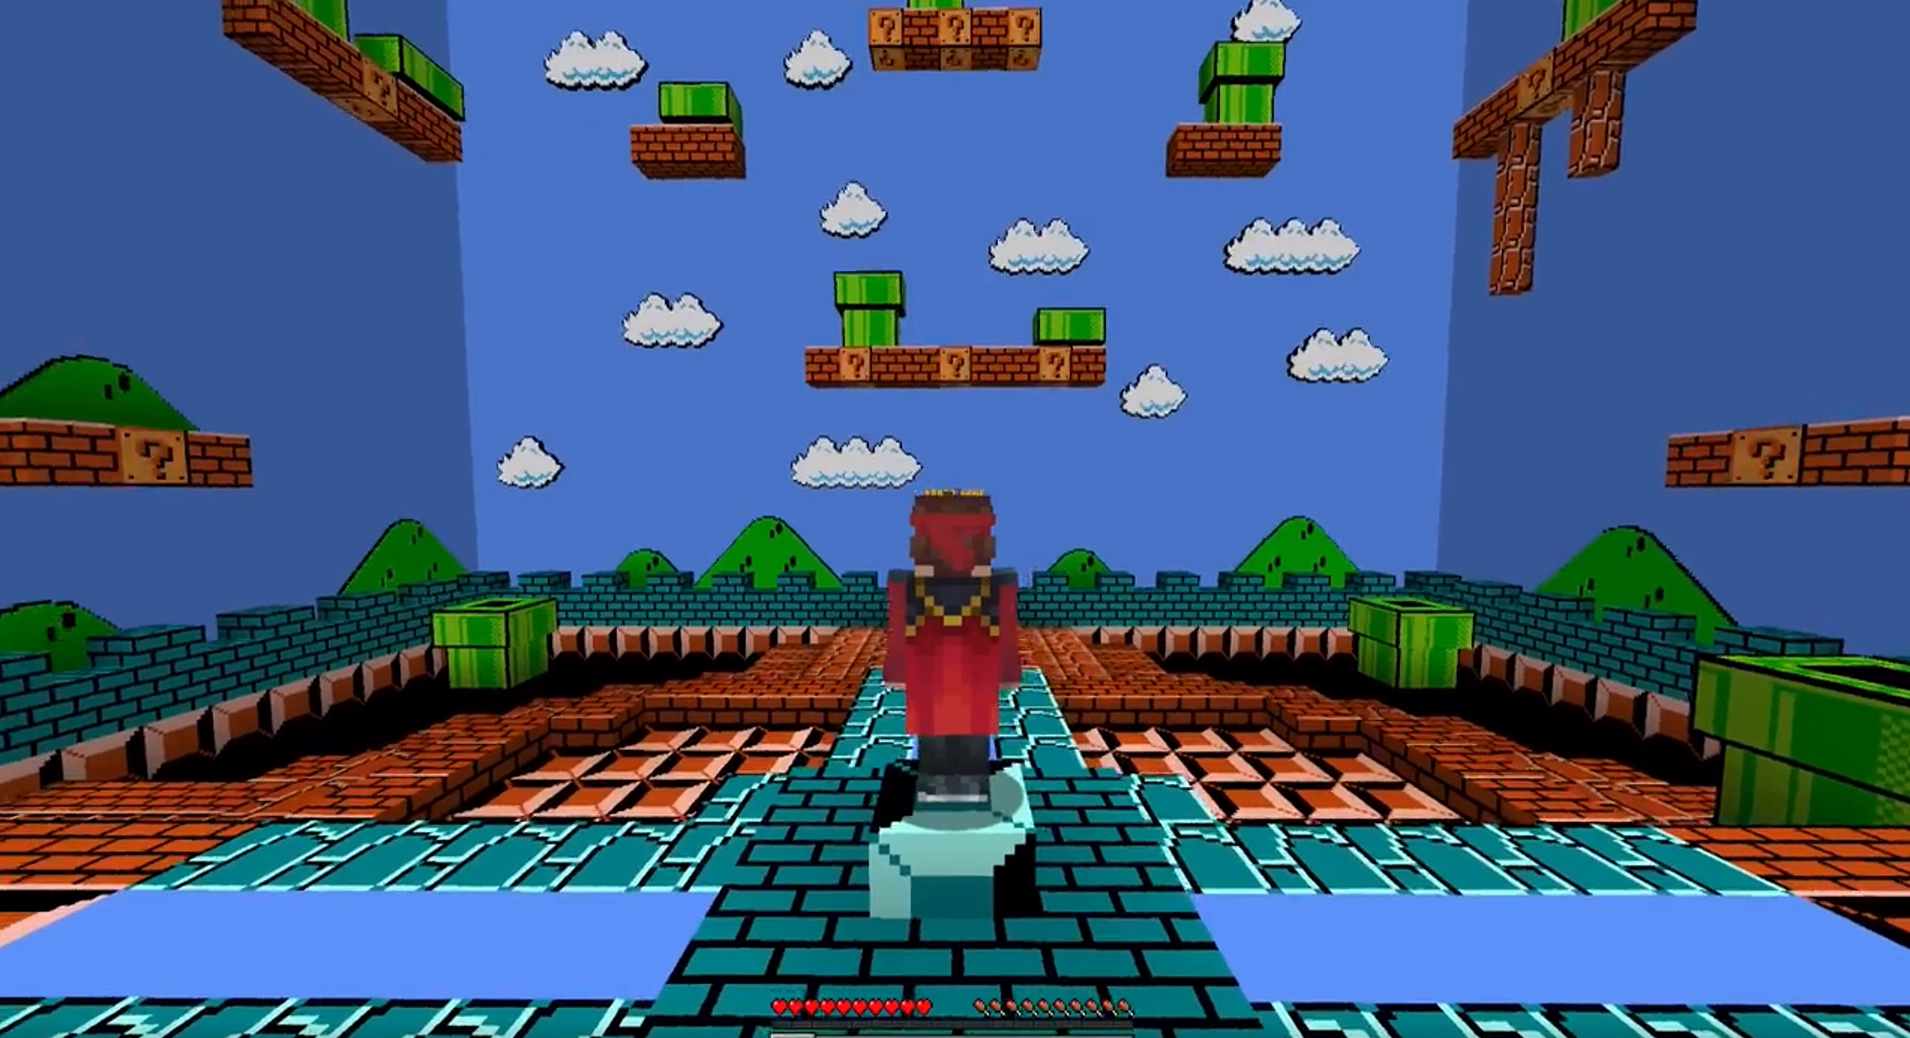 Game thủ tạo game Super Mario Bros 3D trong Minecraft không cần dùng mod, thậm chí còn chơi được - Ảnh 1.